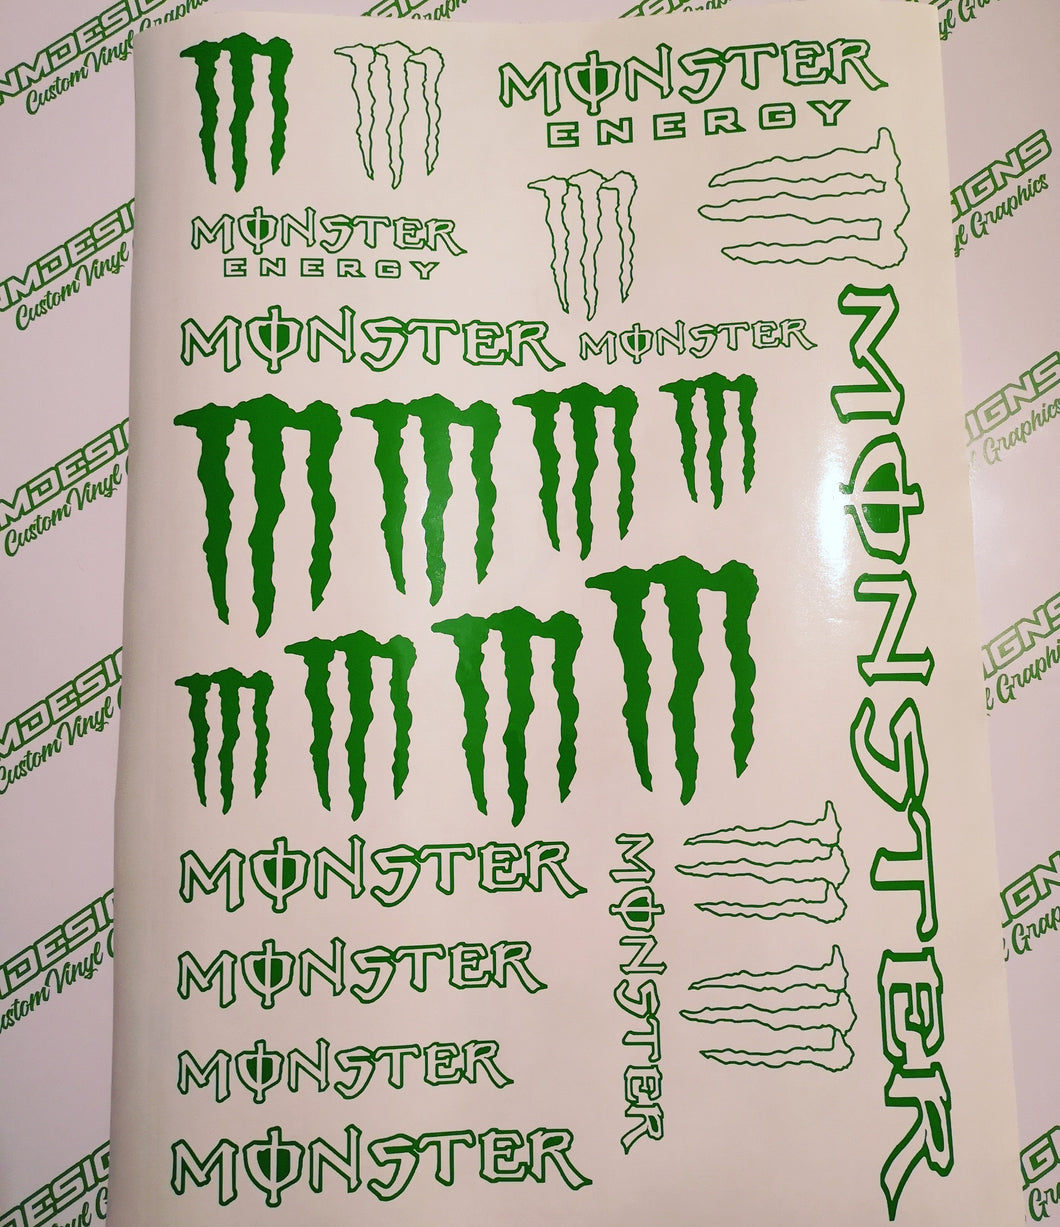 Full sheet of Monster Energy stickers